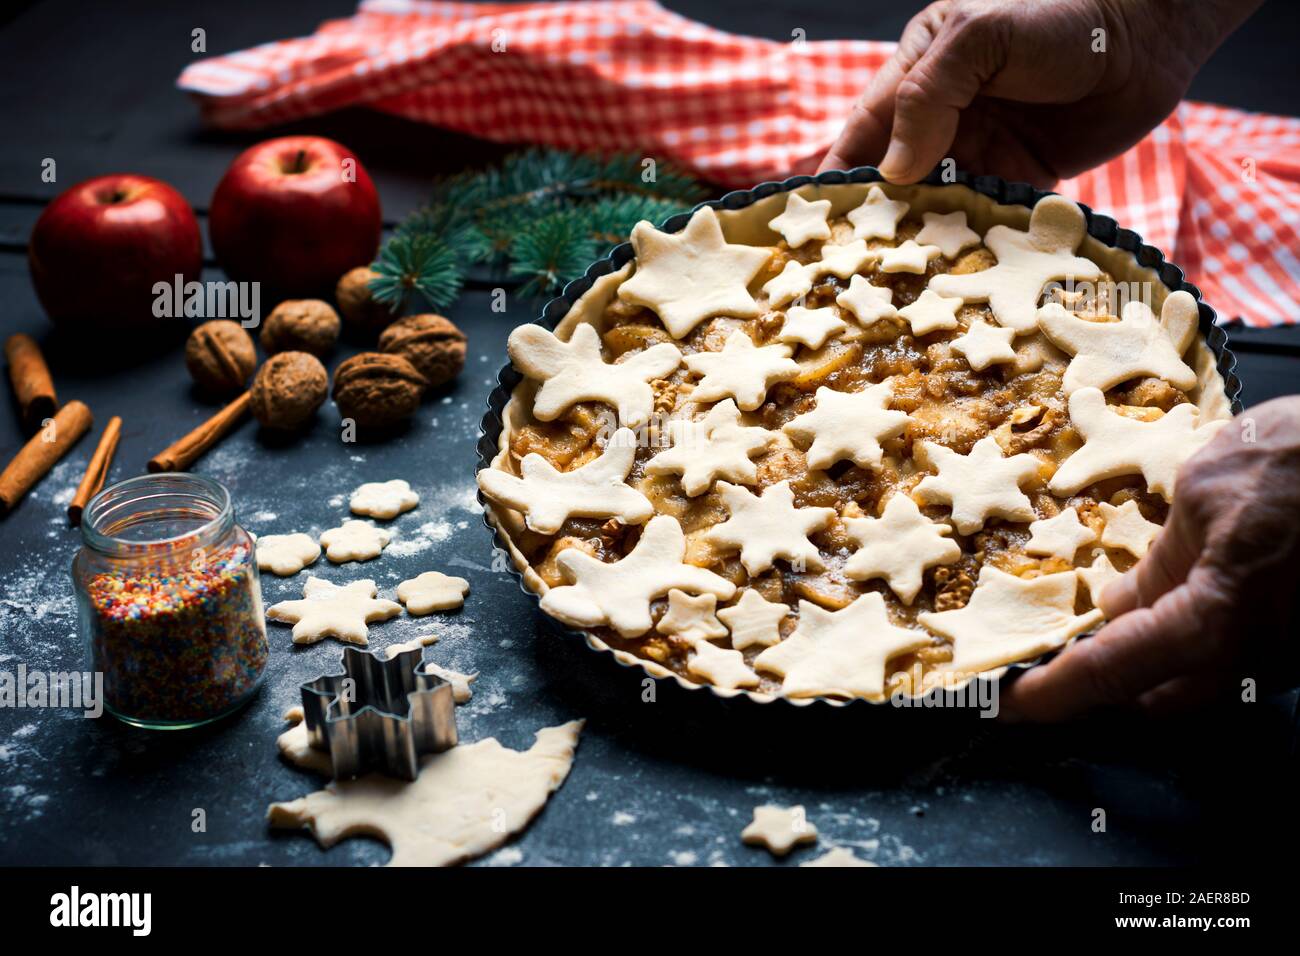 Hauts faits maison et décoration festive holding apple pie sur une casserole Banque D'Images